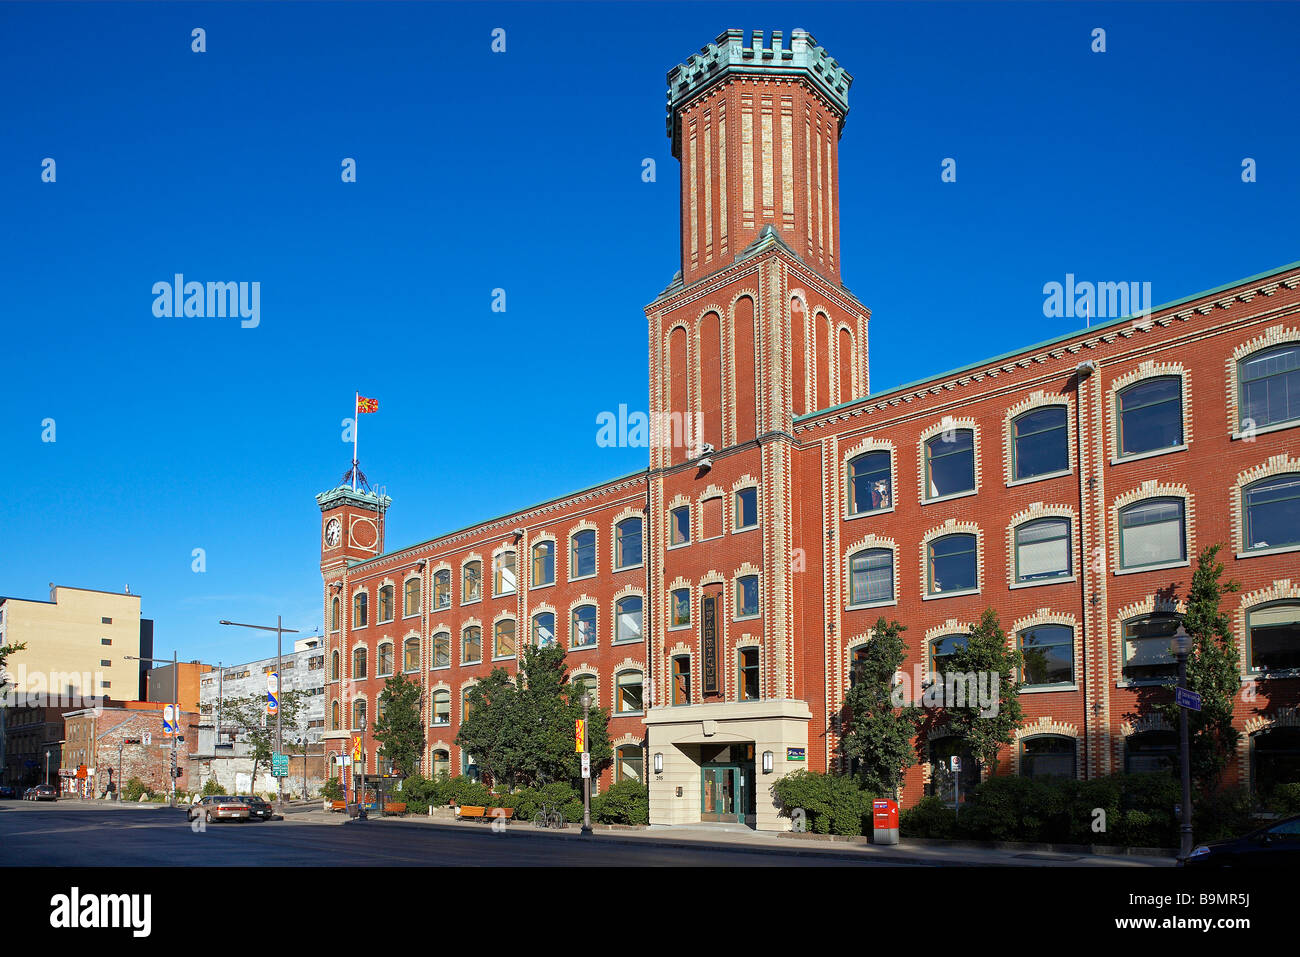 Canada, Quebec Province, Quebec City, Saint-Roch district, la Fabrique, industrial architecture Stock Photo